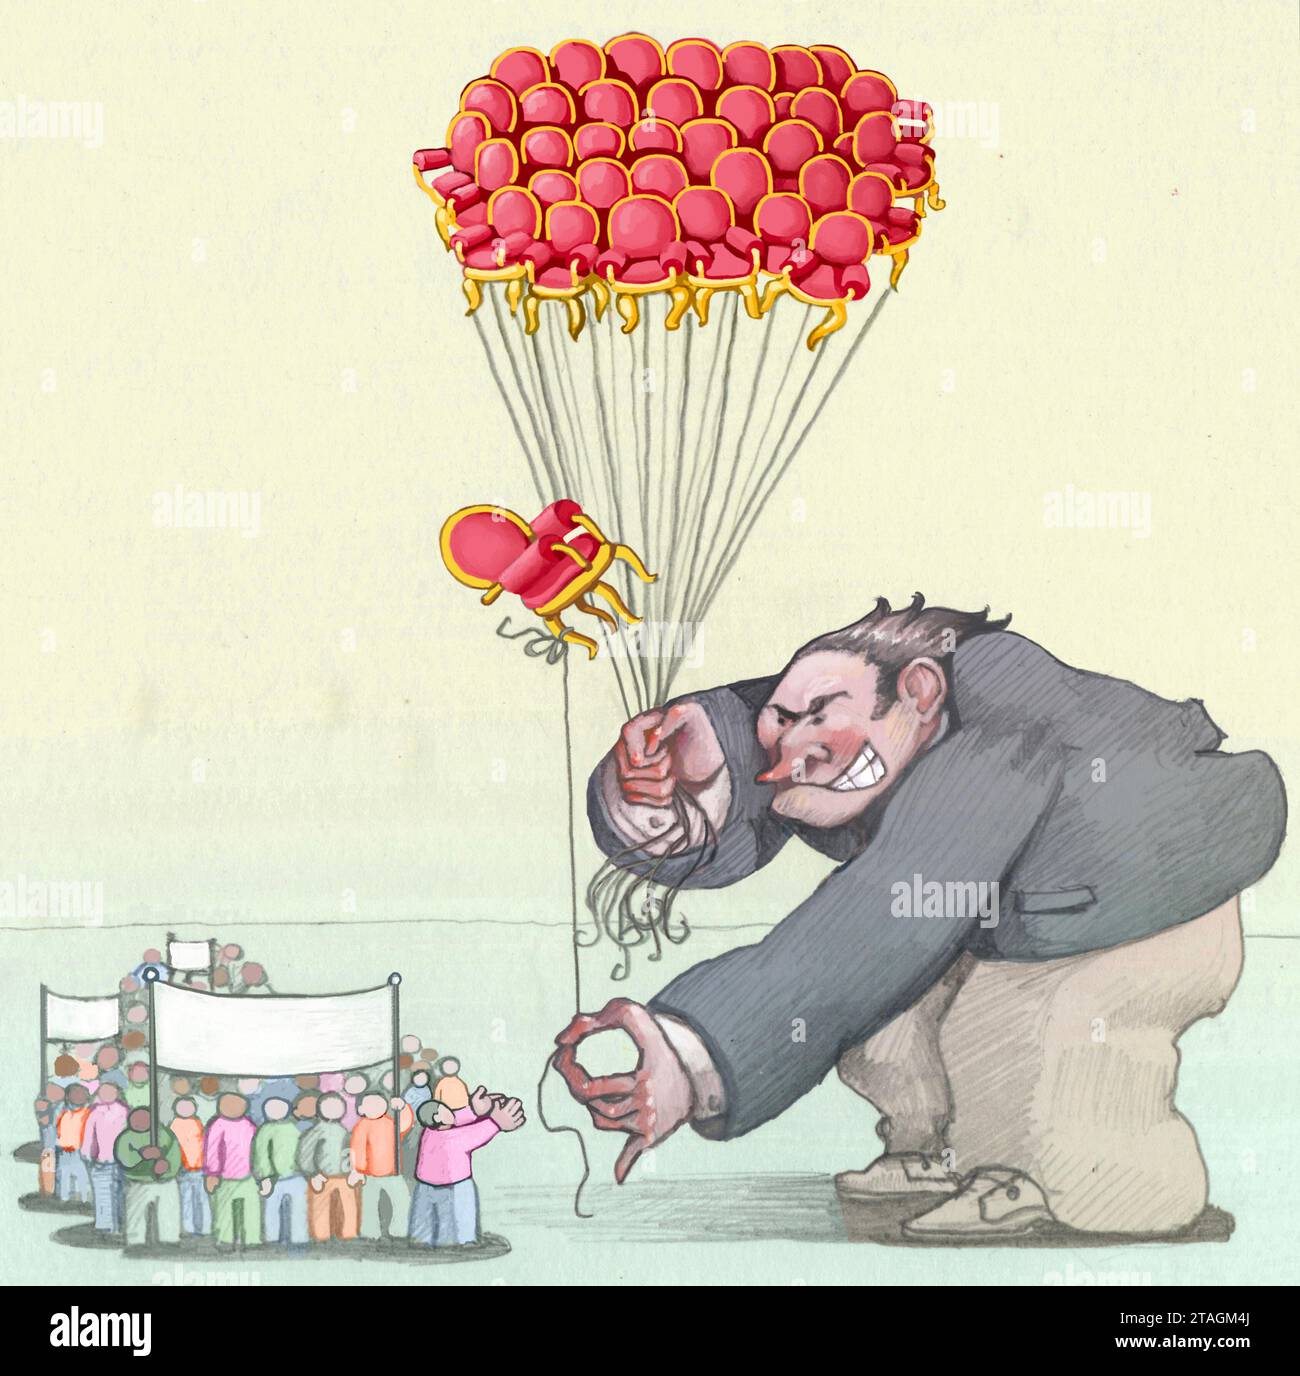 Ein riesiger Mann, der als reicher Mann verkleidet ist, hält viele politische Sitze wie Ballons und bietet einen zu einer Prozession winziger Männer an, eine Metapher für Elekti Stockfoto